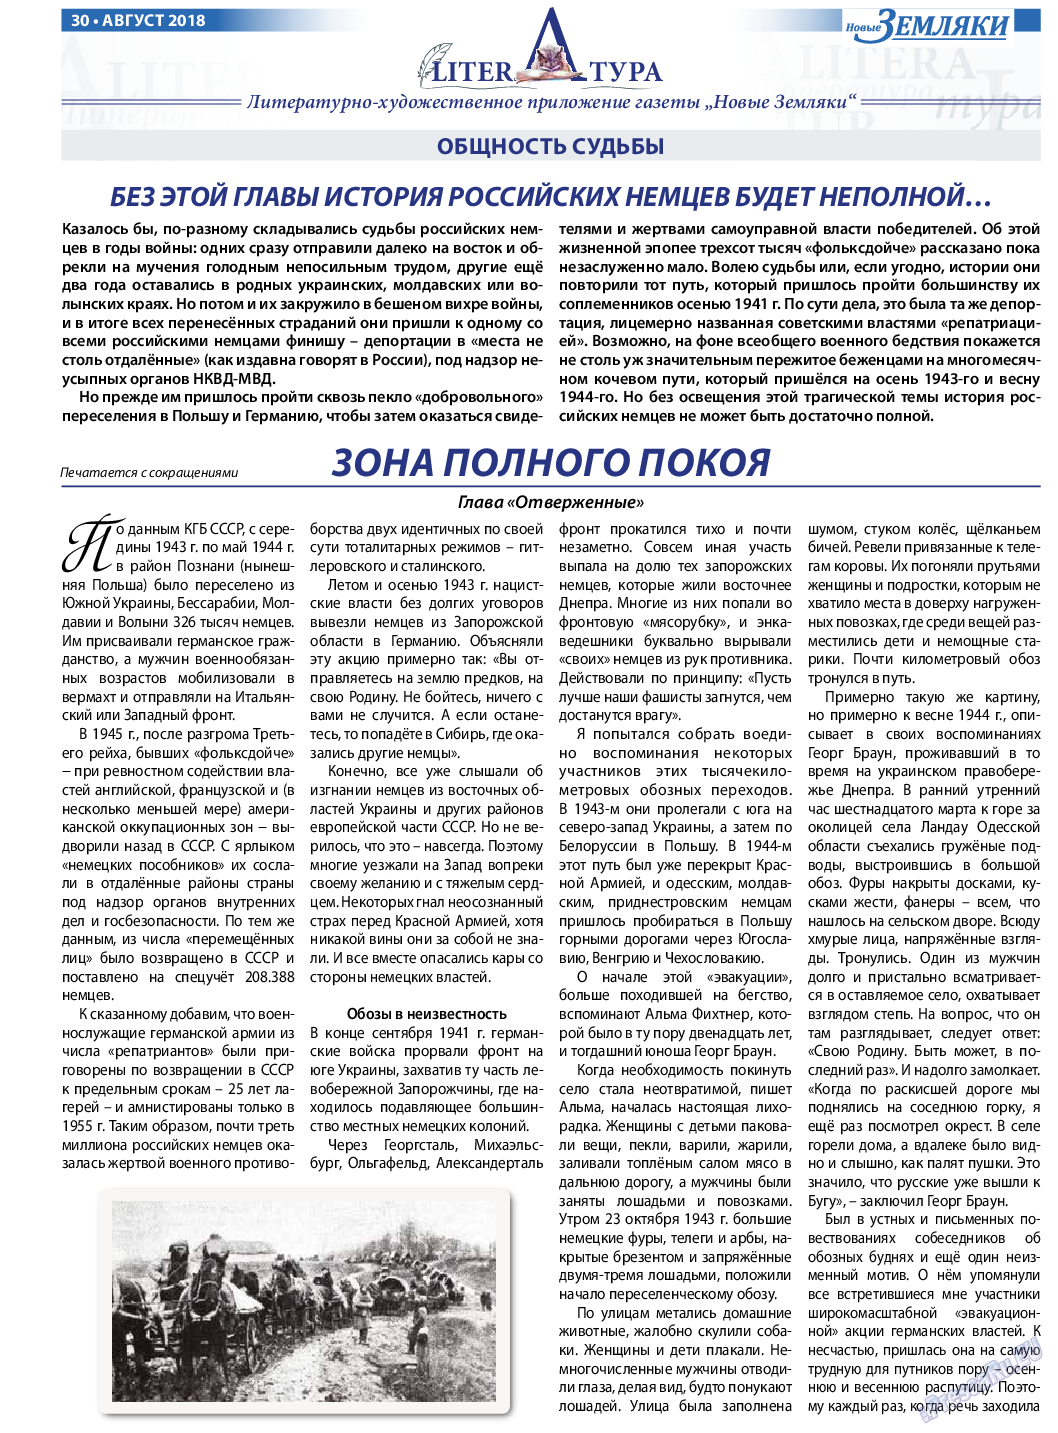 Новые Земляки (газета). 2018 год, номер 8, стр. 30